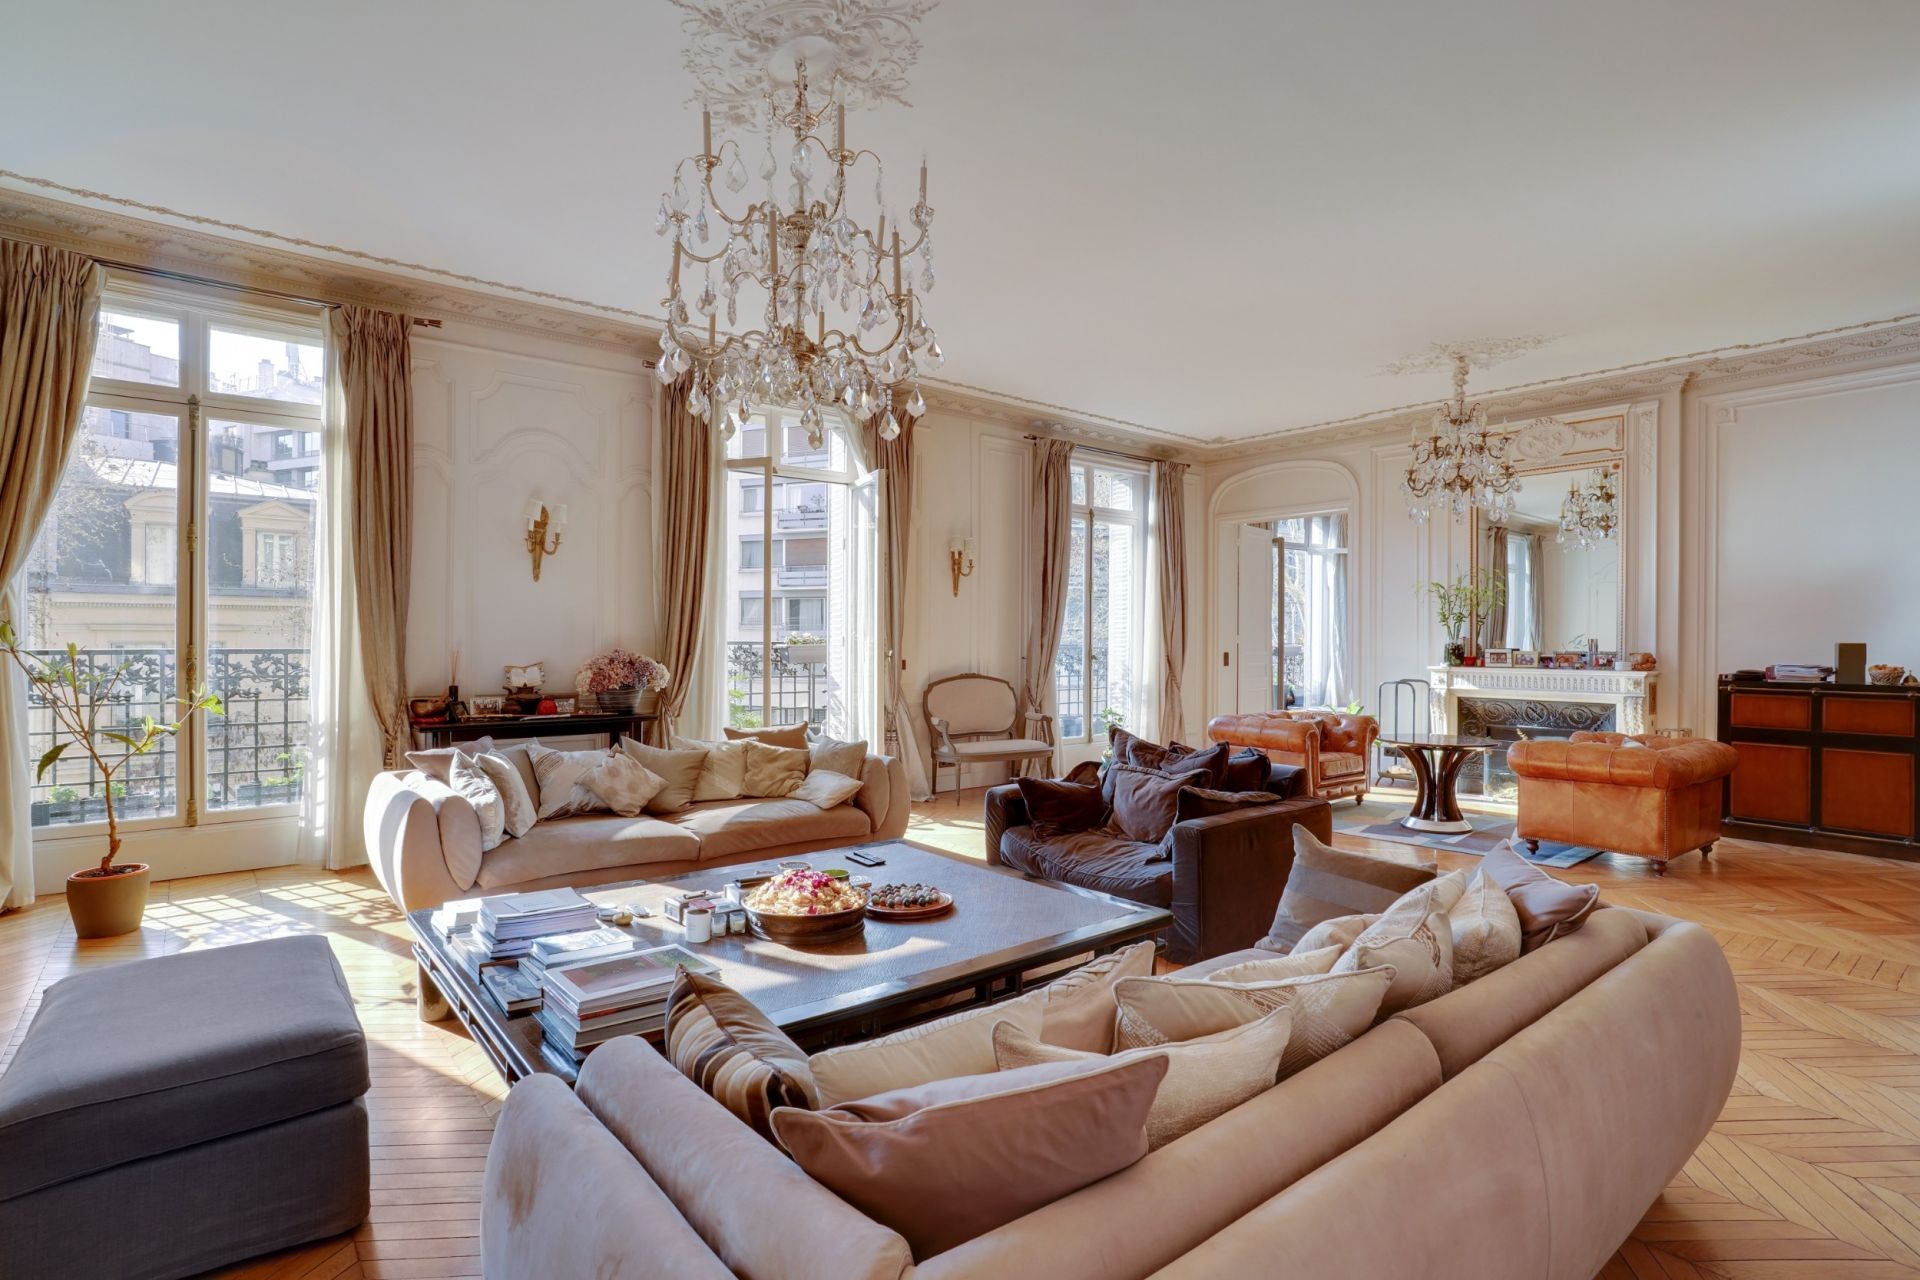 Sale Apartment Paris 16 (75116) 412.48 m²